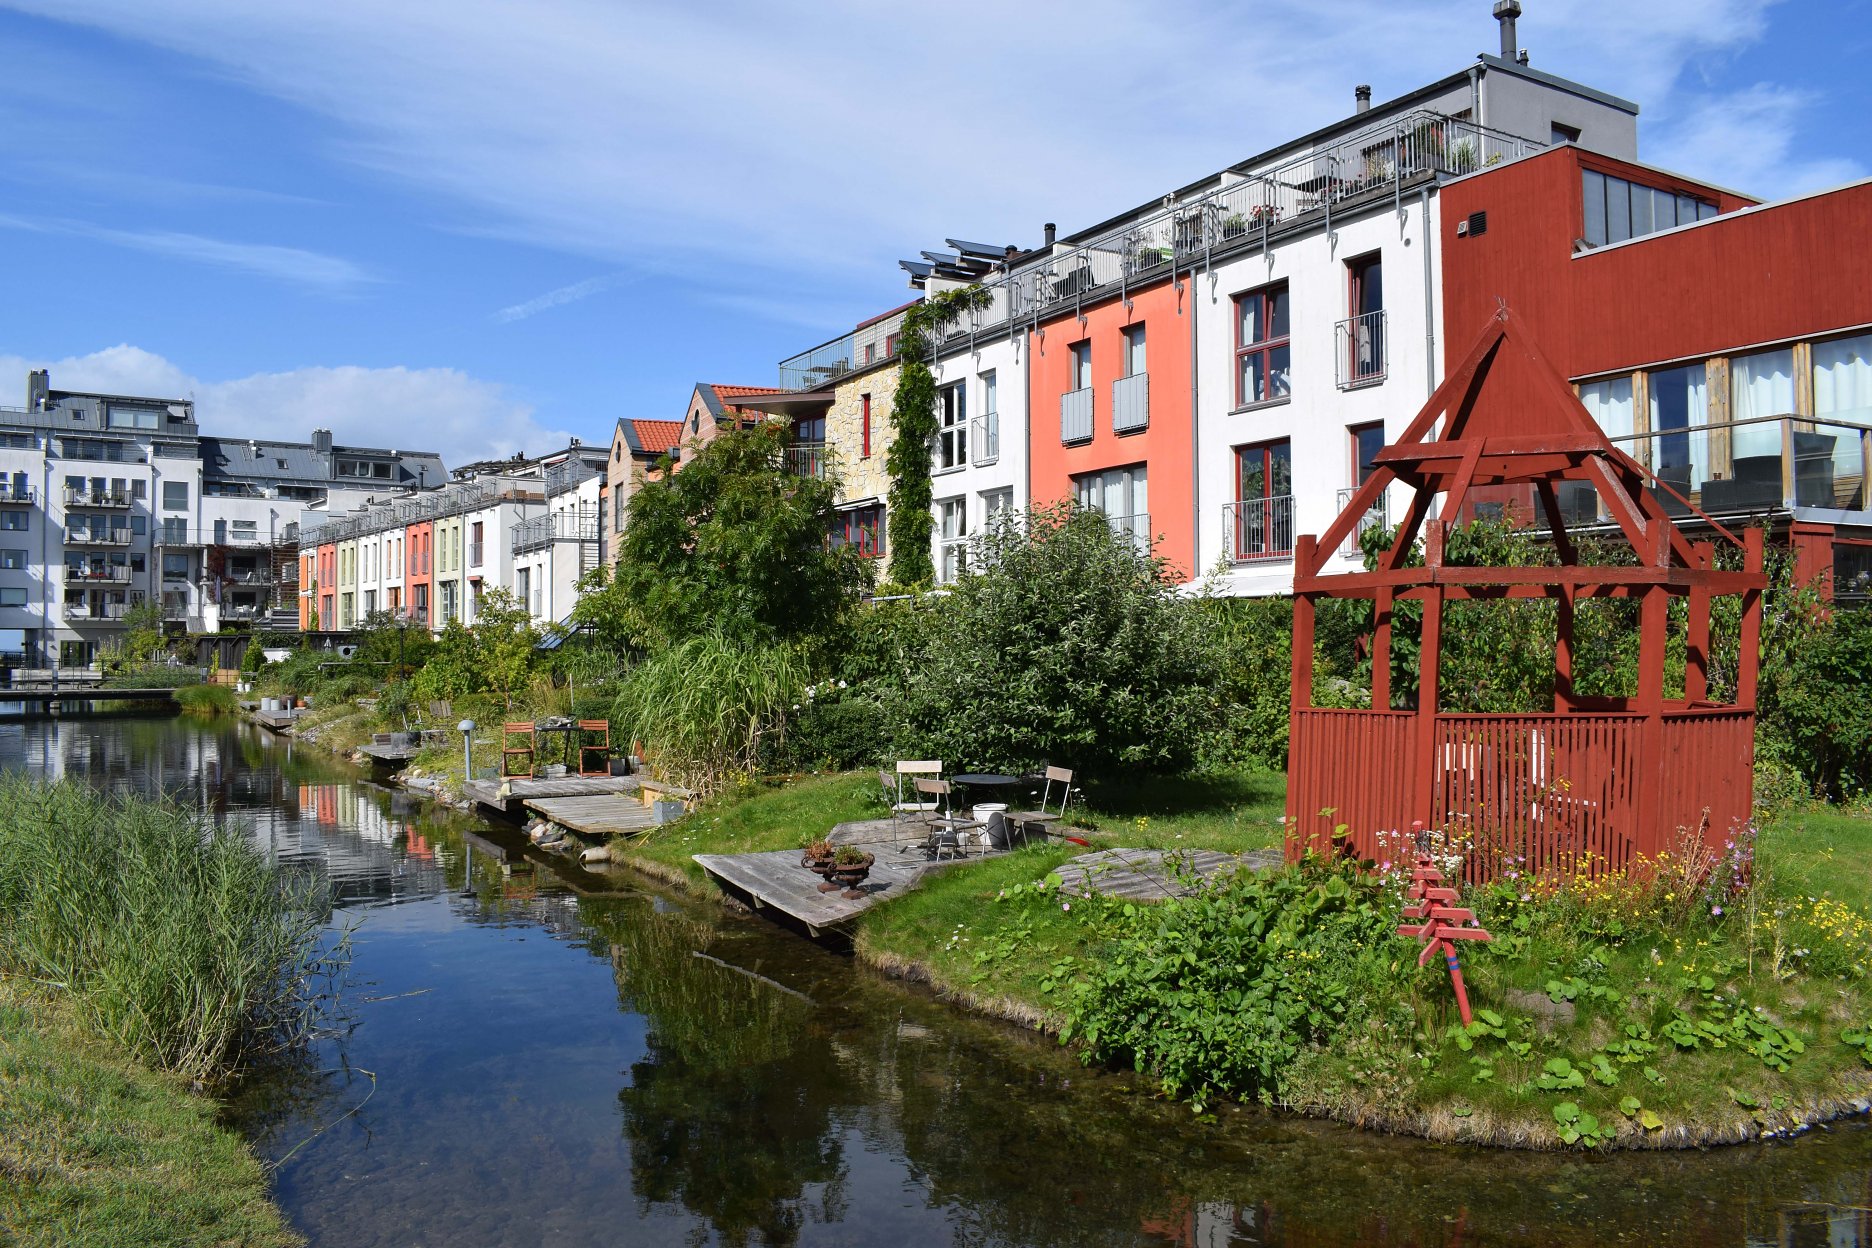 Vo švédskom meste Malmö odštartovali pilotné projkety trvalo udržateľných priestorov. Miestna štvrť Västra Hamnen bola priekopníckou realizáciou urbánnej štruktúry, v rámci ktorej bol kladený dôraz na trvalú udržateľnosť so zachovaním všetkých aspektov kvality života v oblasti. Výrazne sa tu pracuje s prvkom dažďovej vody a eliminácie jej úniku do kanalizácie. Zrážková voda je navrátená cez systém dažďovyćh zahrad a kanálov priamo do mora.